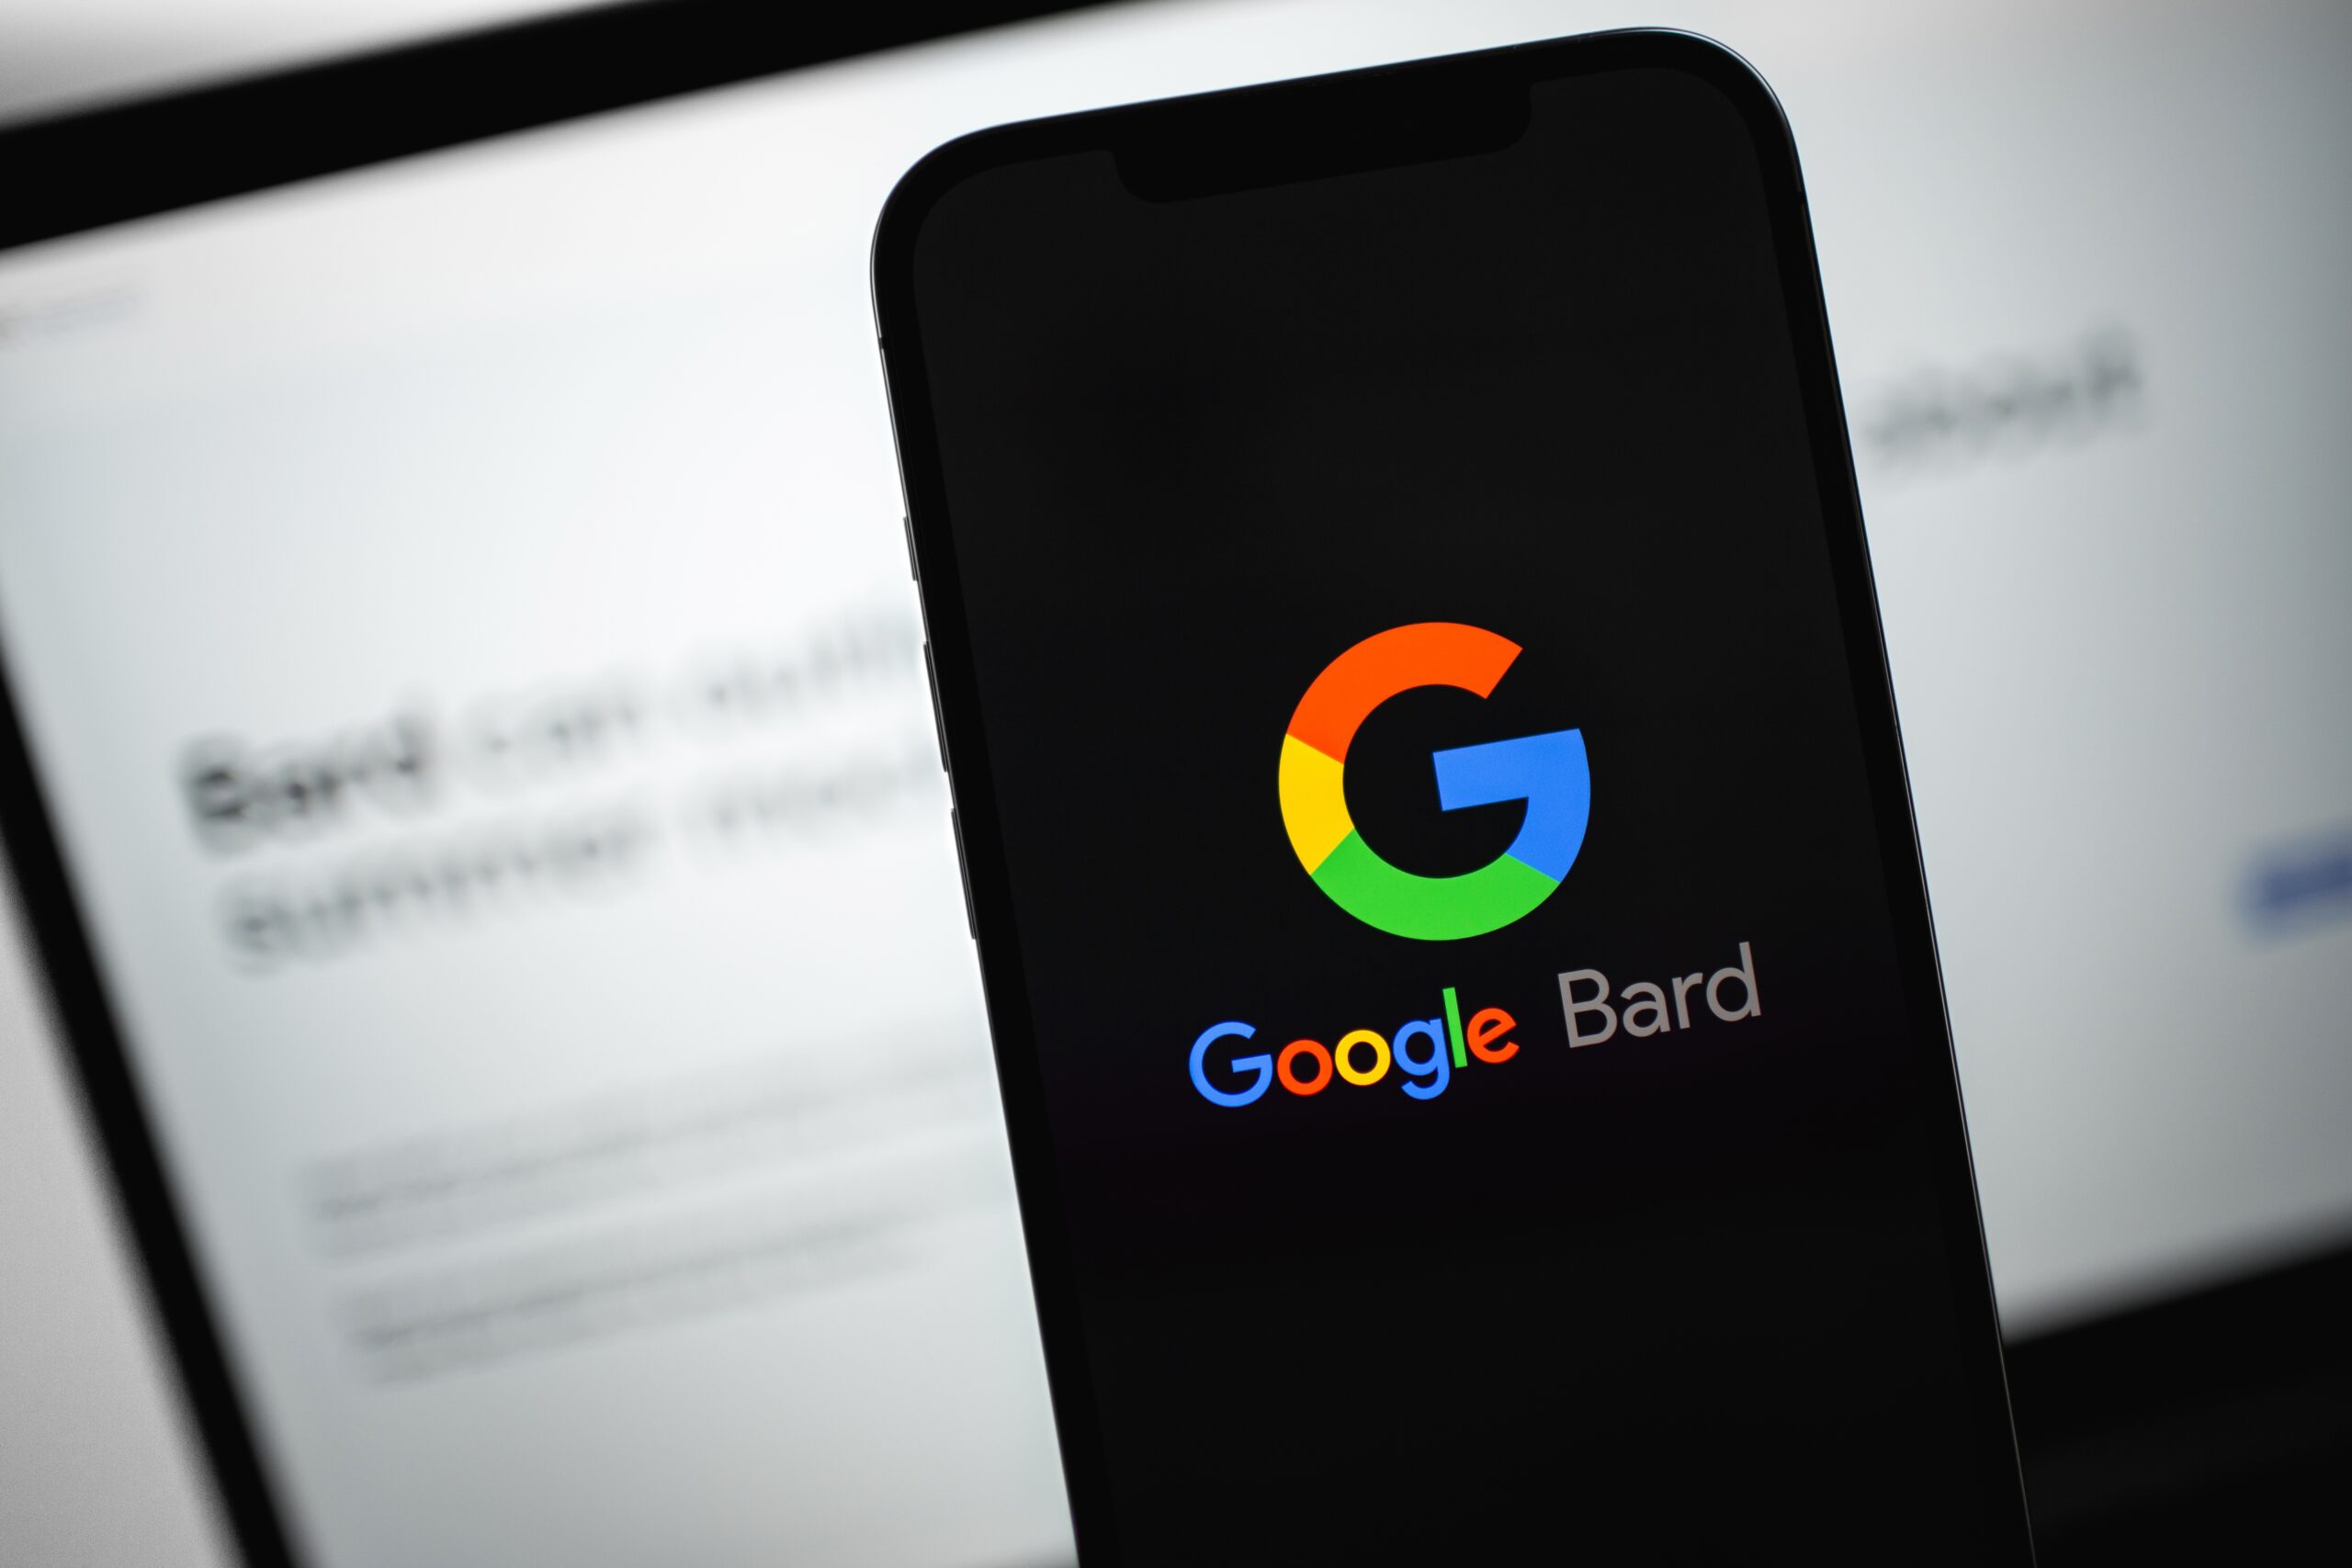 Imagem mostra a logomarca do Bard, do Google, em uma tela de smartphone